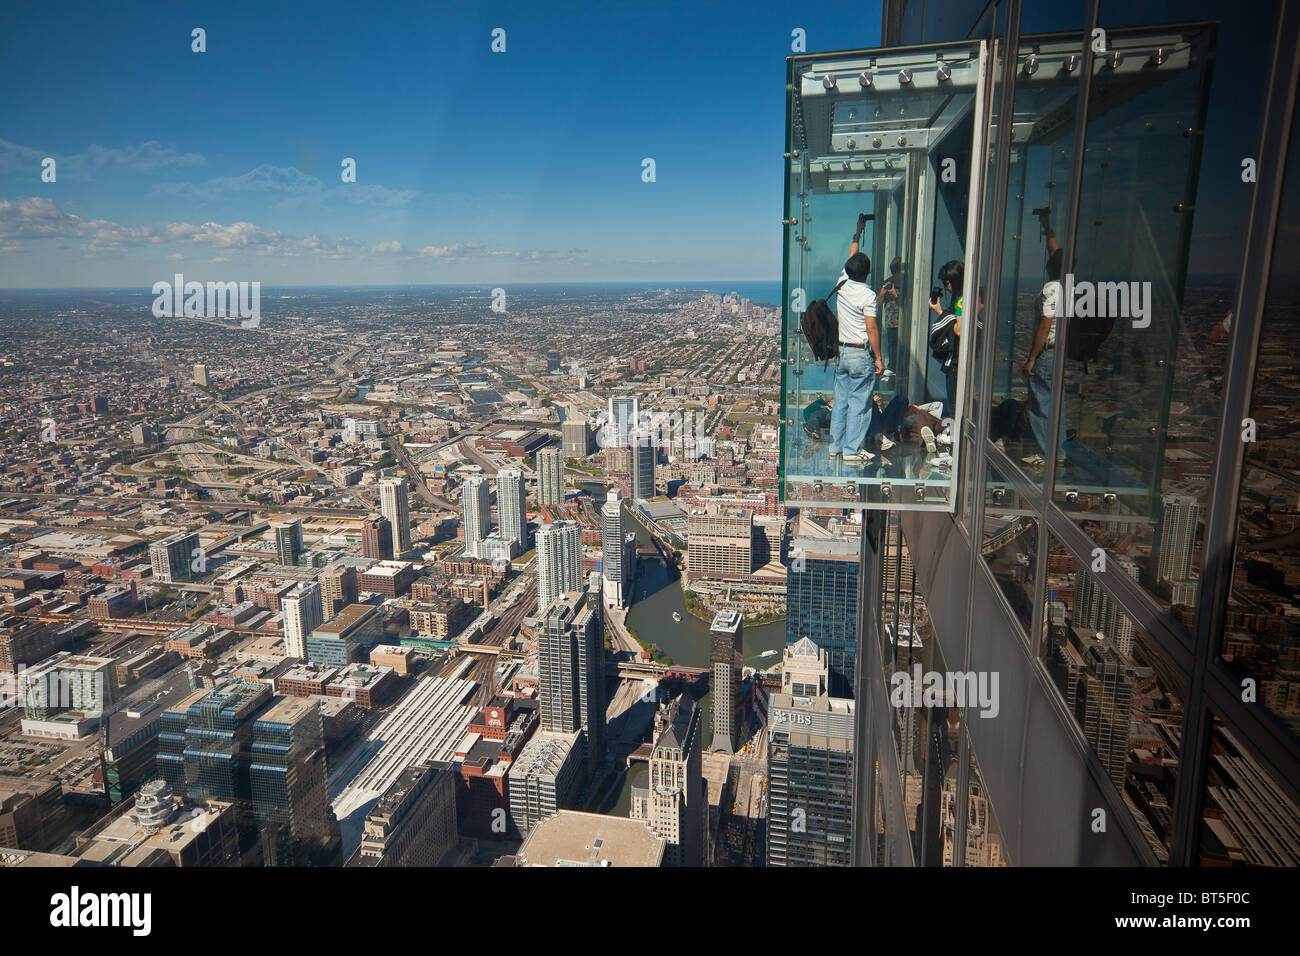 Touristen in Glas Balkon Skydeck Aussichtsplattform anzeigen Chicago skyline103rd Stockwerk des Willis Tower Sears Tower Stockfoto